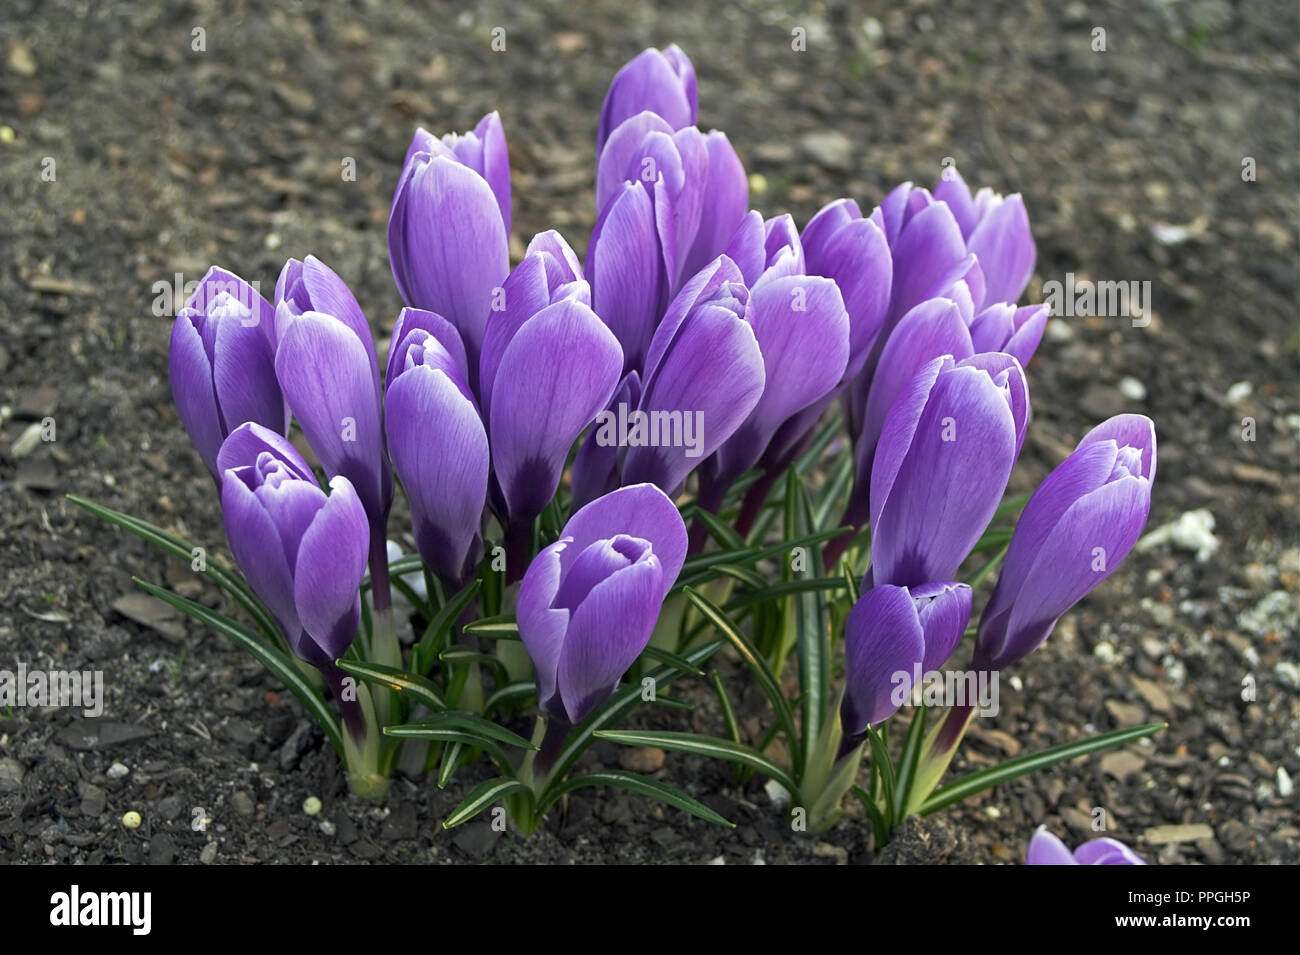 Purple crocuses bloom beautifully and enjoy the eyes. Fioletowe krokusy pięknie kwitną i cieszą oczy. Stock Photo